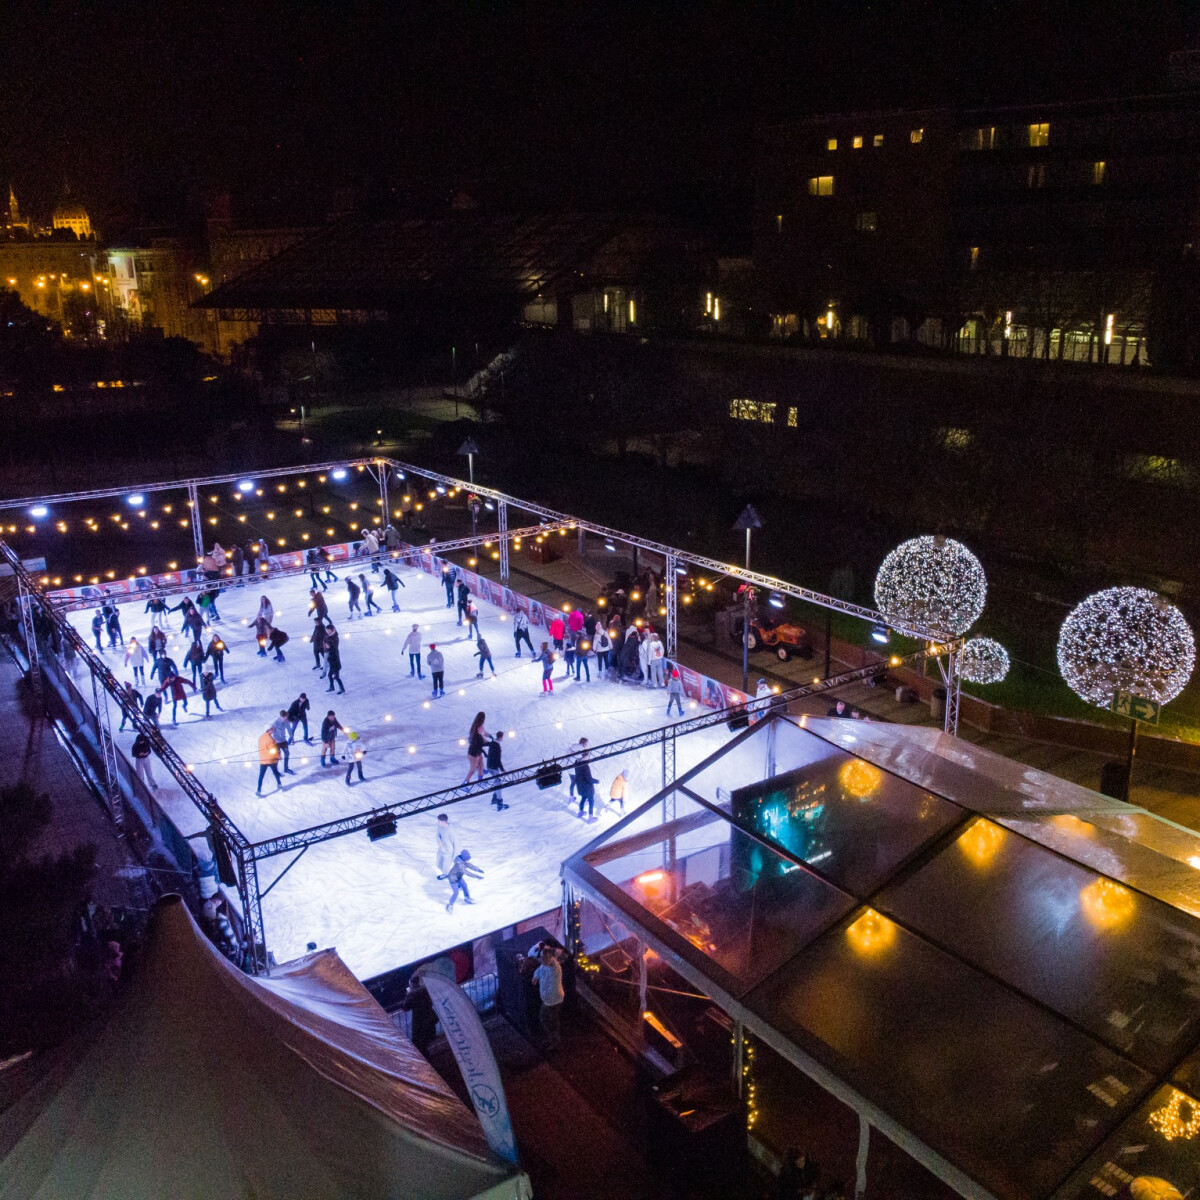 4 ingyenes korcsolyapálya Budapesten, ahol szelhetjük a jeges köröket